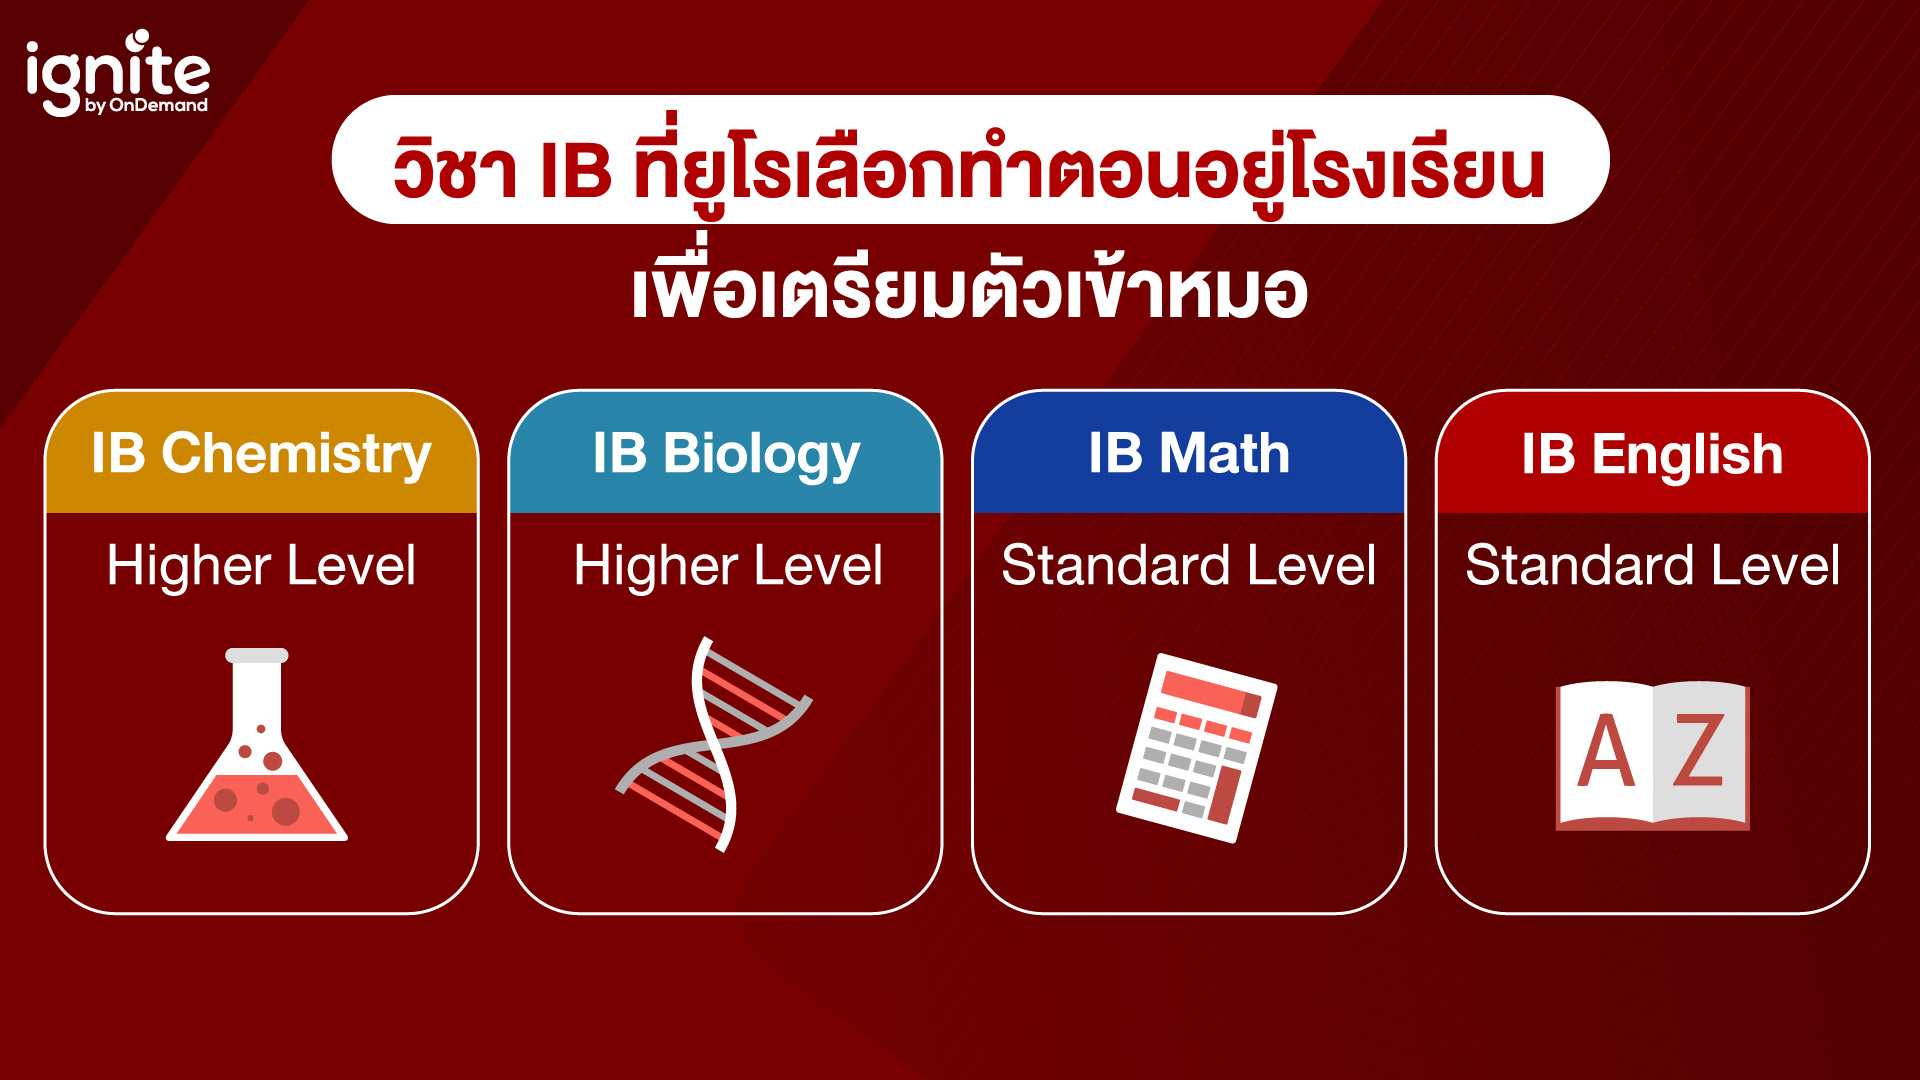 วิชา IB ที่เลือกทำเพื่อเตรียมตัวสอบเข้าคณะแพทย์ในไทย - Bigcover3